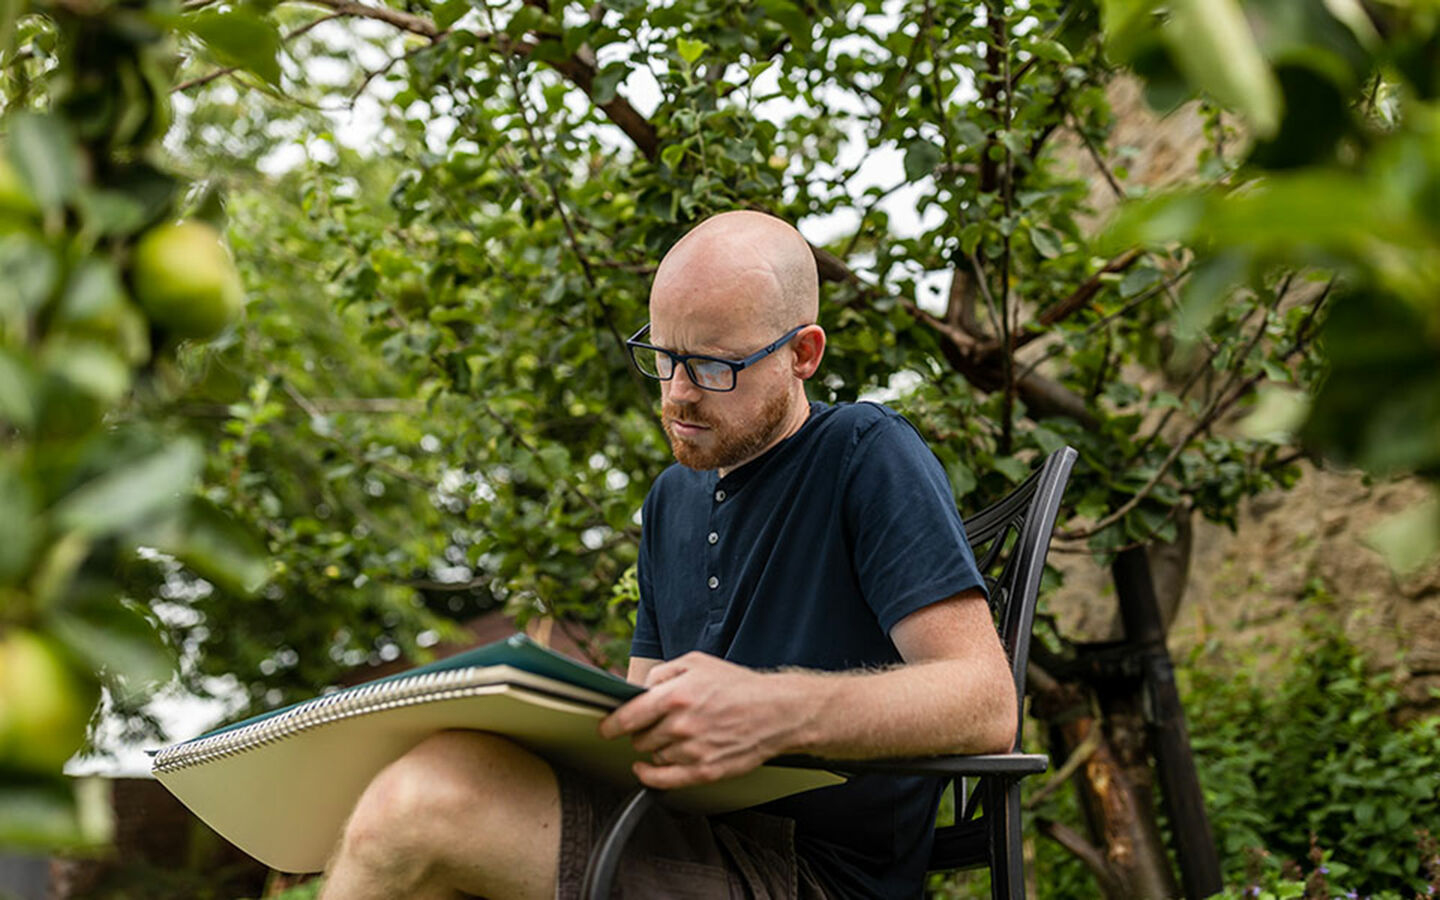 Howard Lee sitzt im Garten auf einer Bank unter Apfelbaum und zeichnet auf Skizzenblock